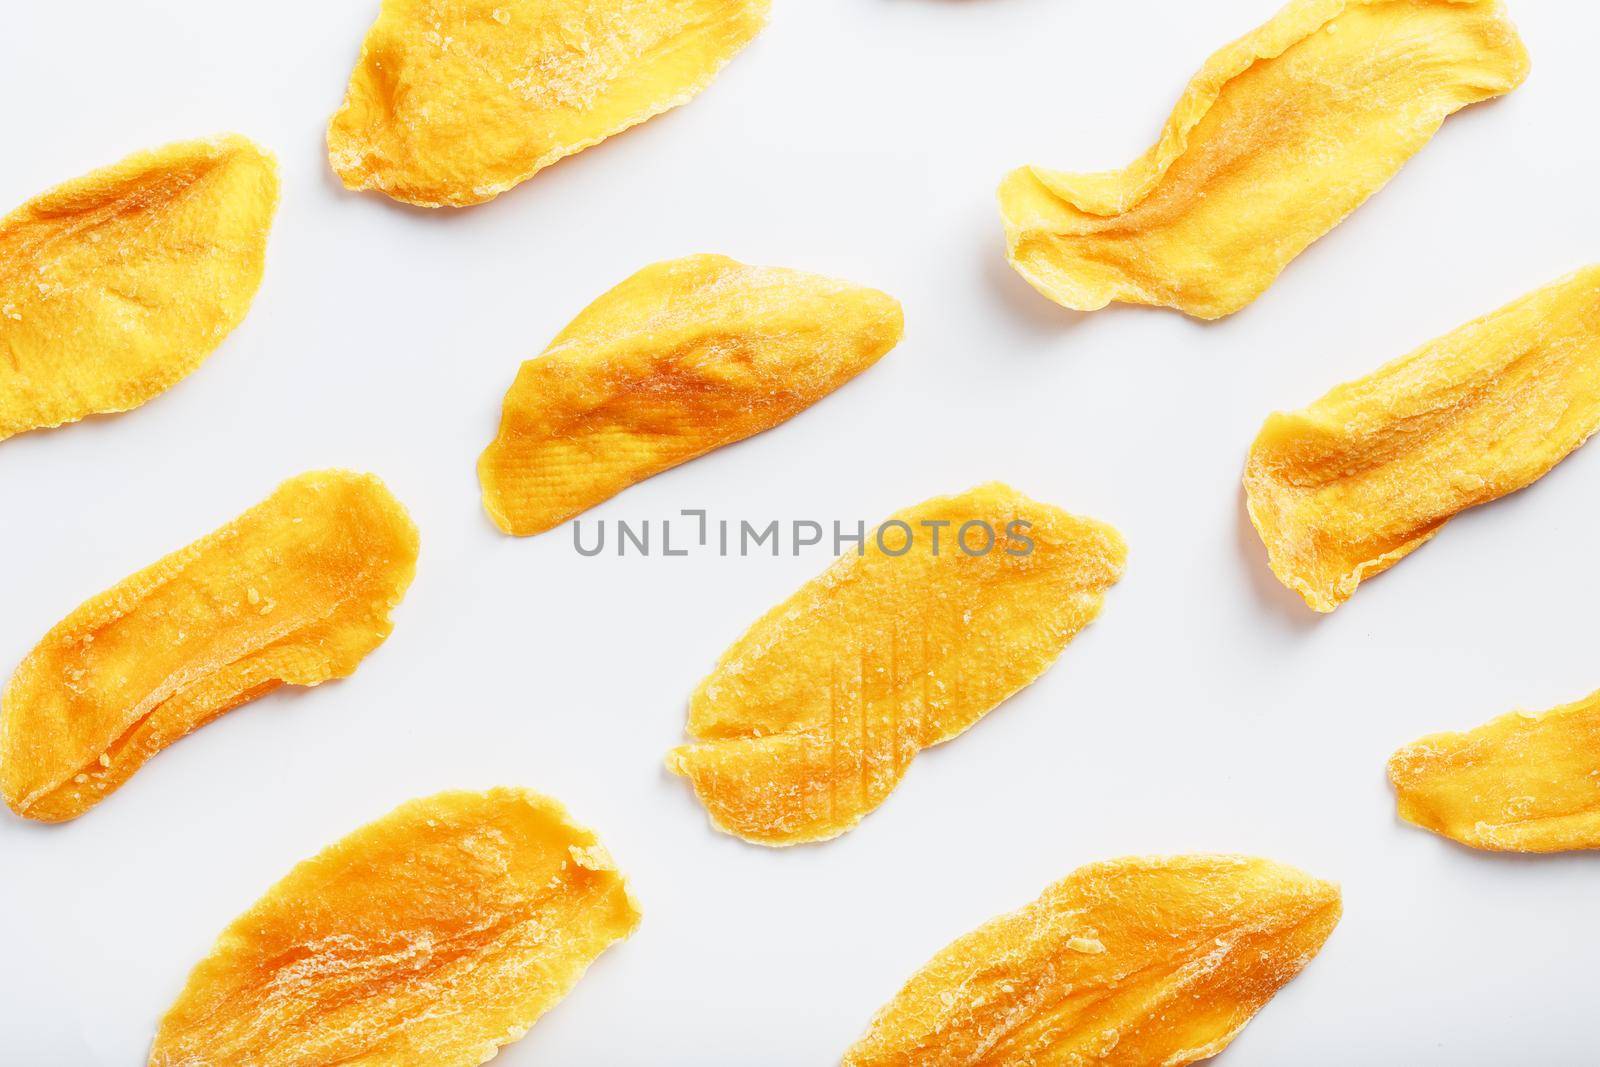 Organic dried mango fruit slices isolated on white background